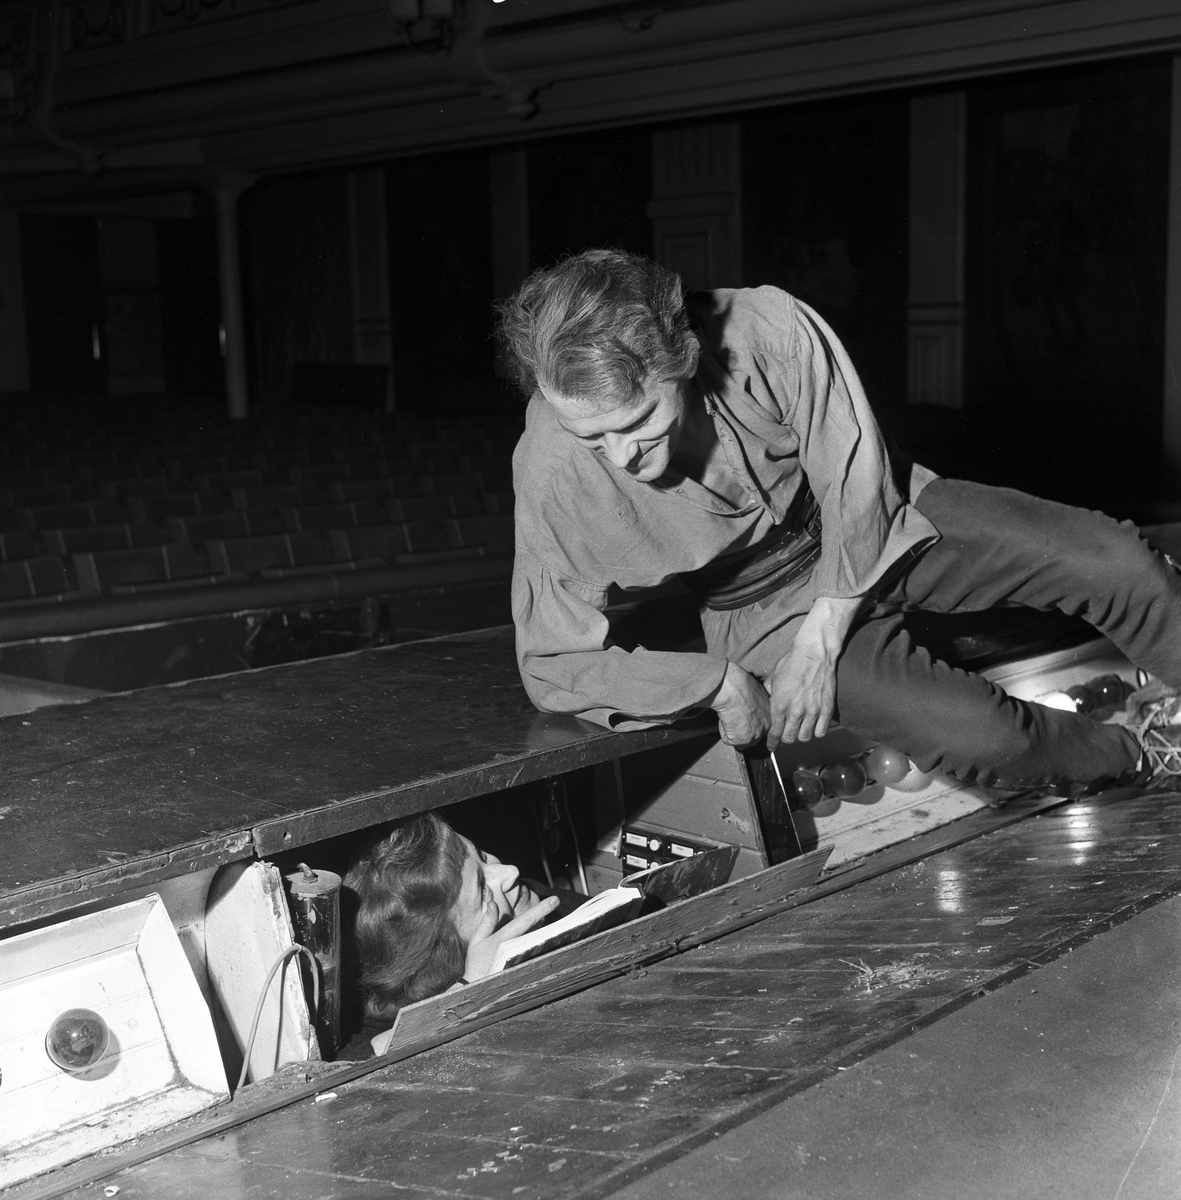 Serie. Fra Centralteatret i Oslo. Arbeid på og bak scenen. Fotografert mars 1960.

